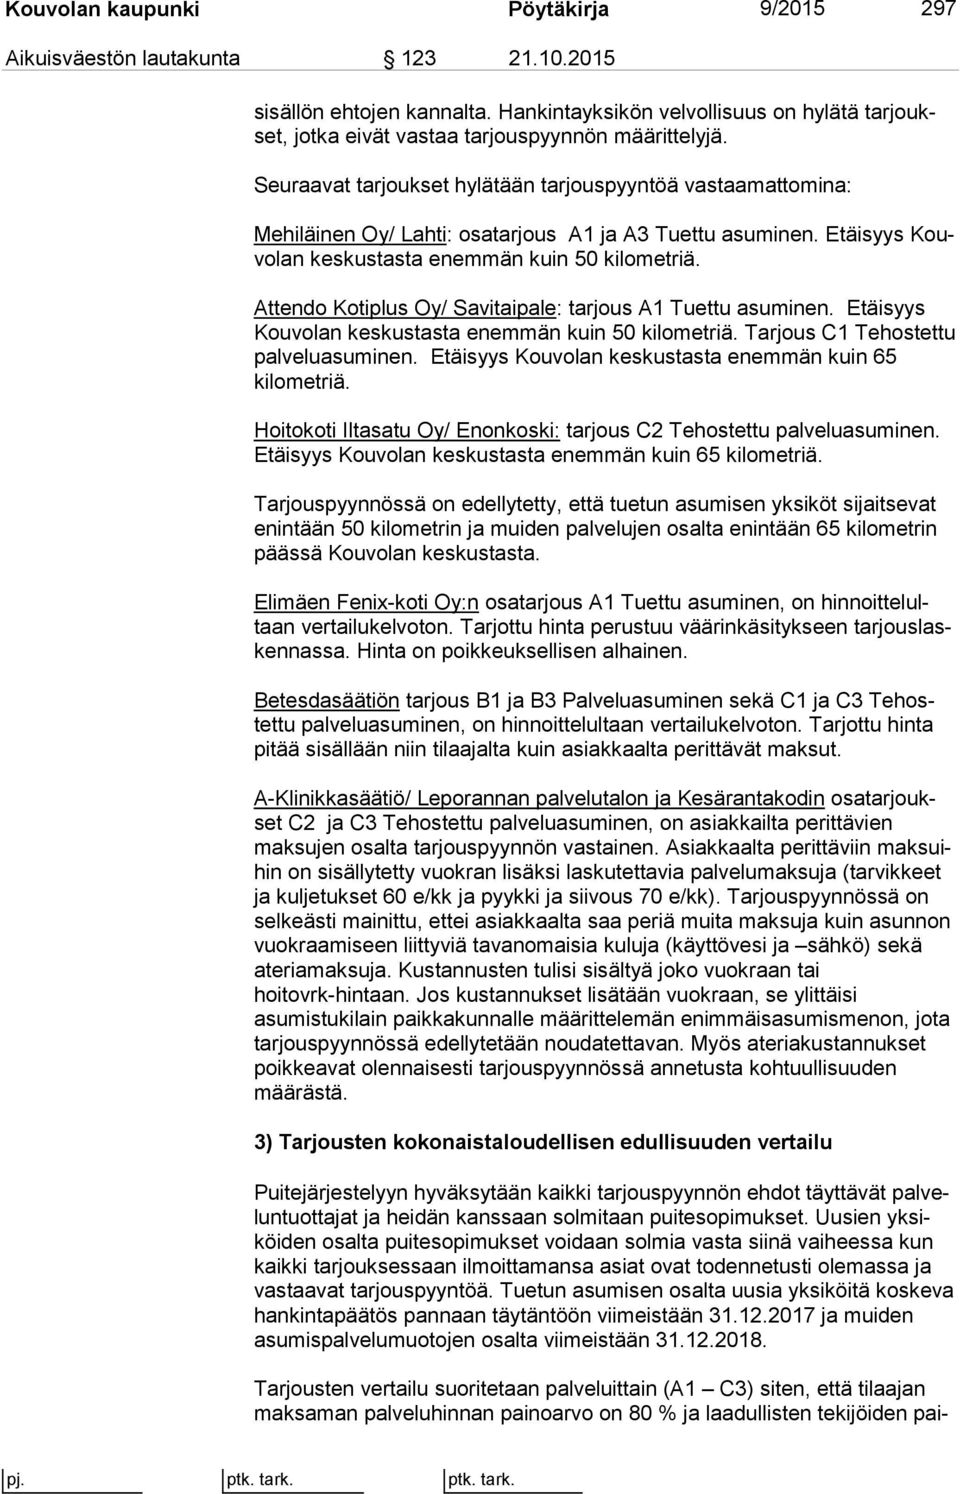 Seuraavat tarjoukset hylätään tarjouspyyntöä vastaamattomina: Mehiläinen Oy/ Lahti: osatarjous A1 ja A3 Tuettu asuminen. Etäisyys Kouvo lan keskustasta enemmän kuin 50 kilometriä.